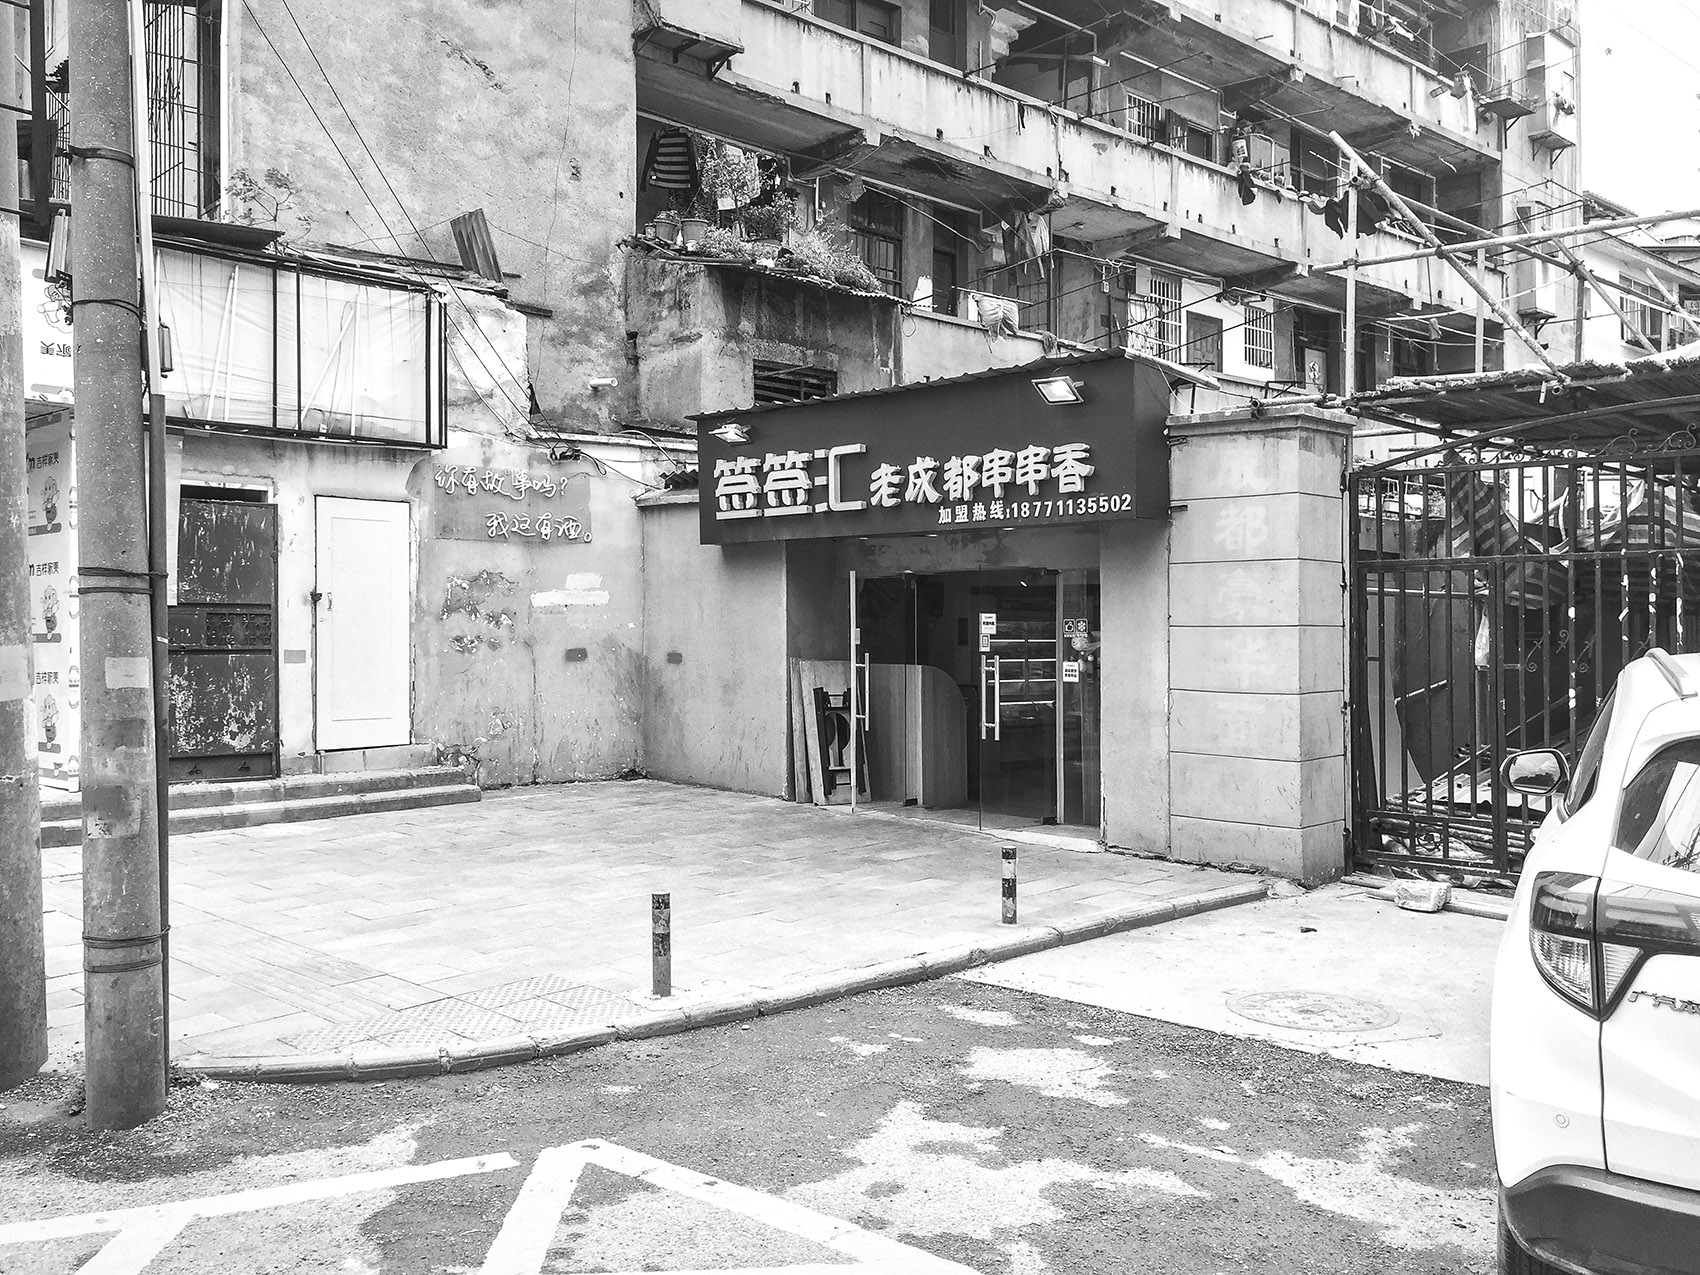 即兴占道，武汉/粮道街串串店门头改造实验-60